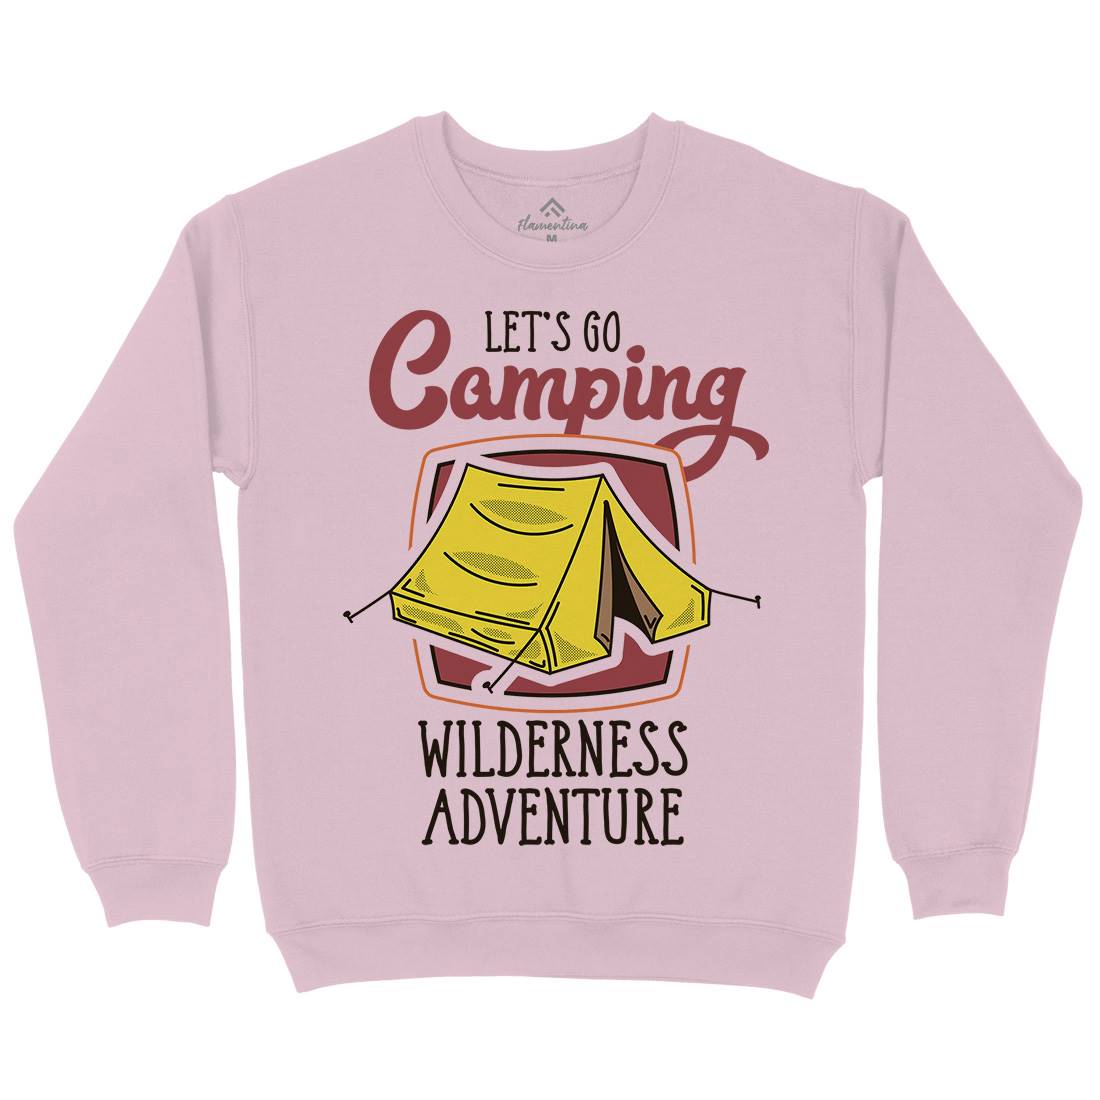 Wilderness Adventure Kids Crew Neck Sweatshirt Nature D998